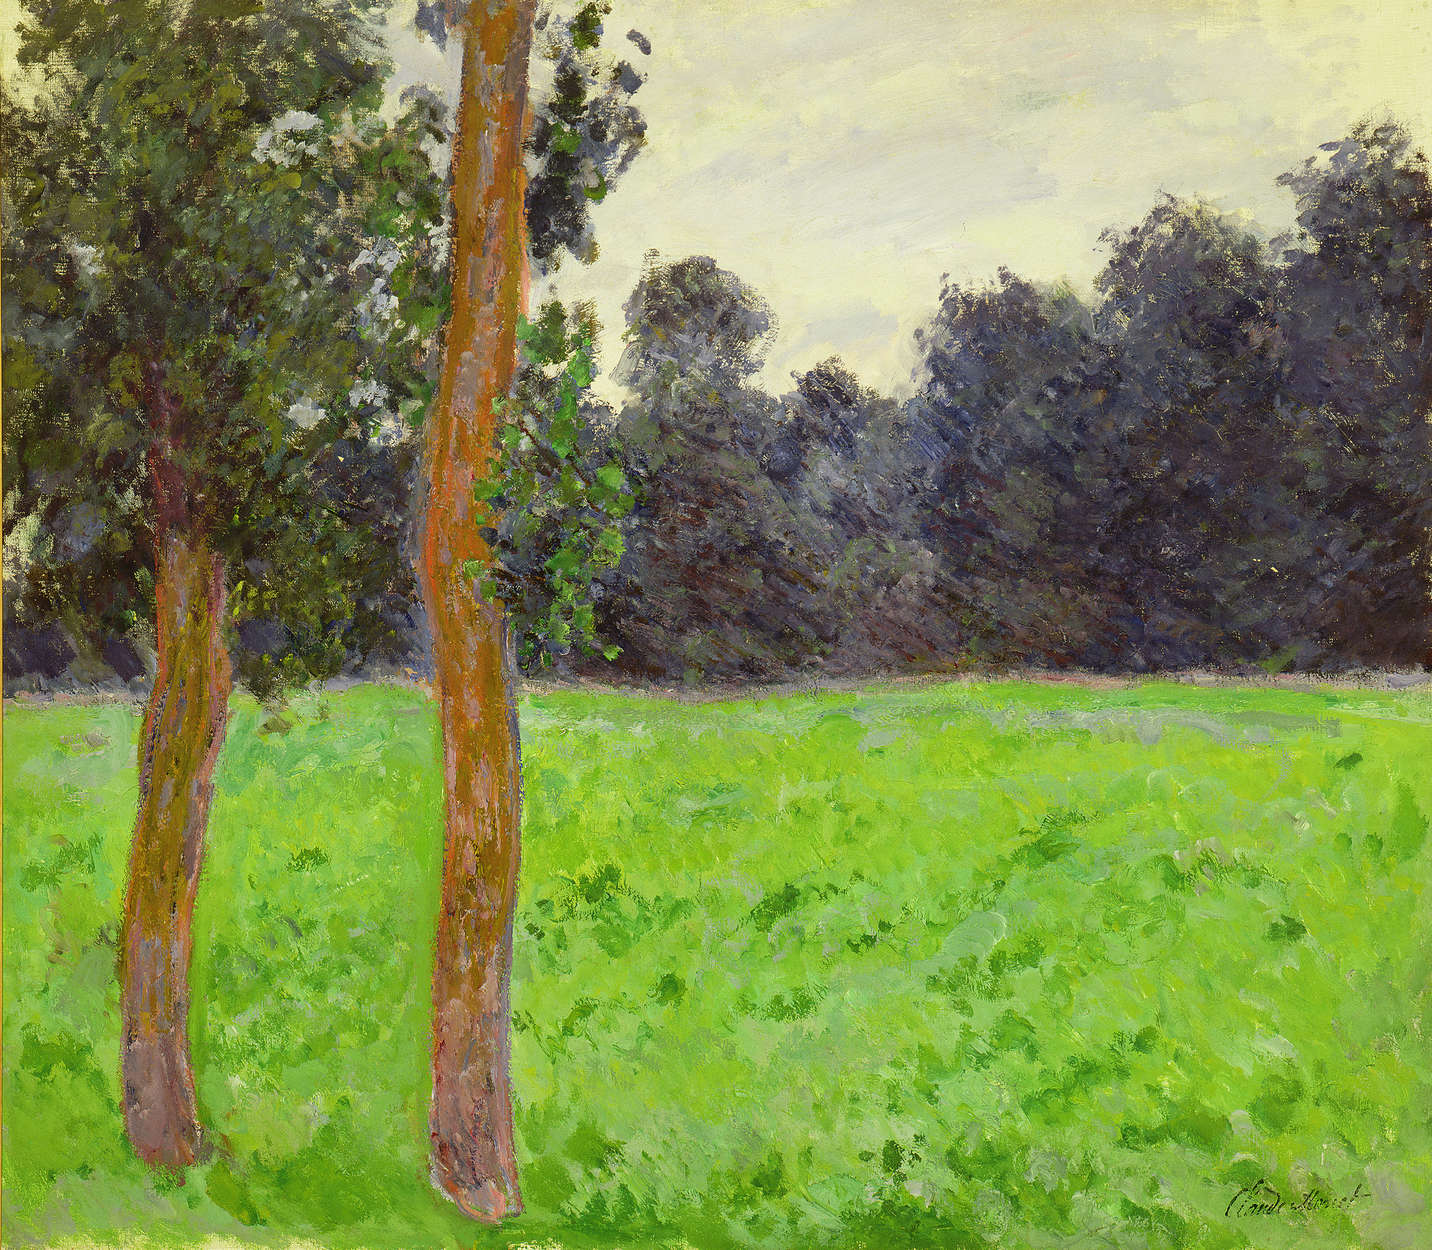             Fototapete "Zwei Bäume auf einer Wiese" von Claude Monet
        